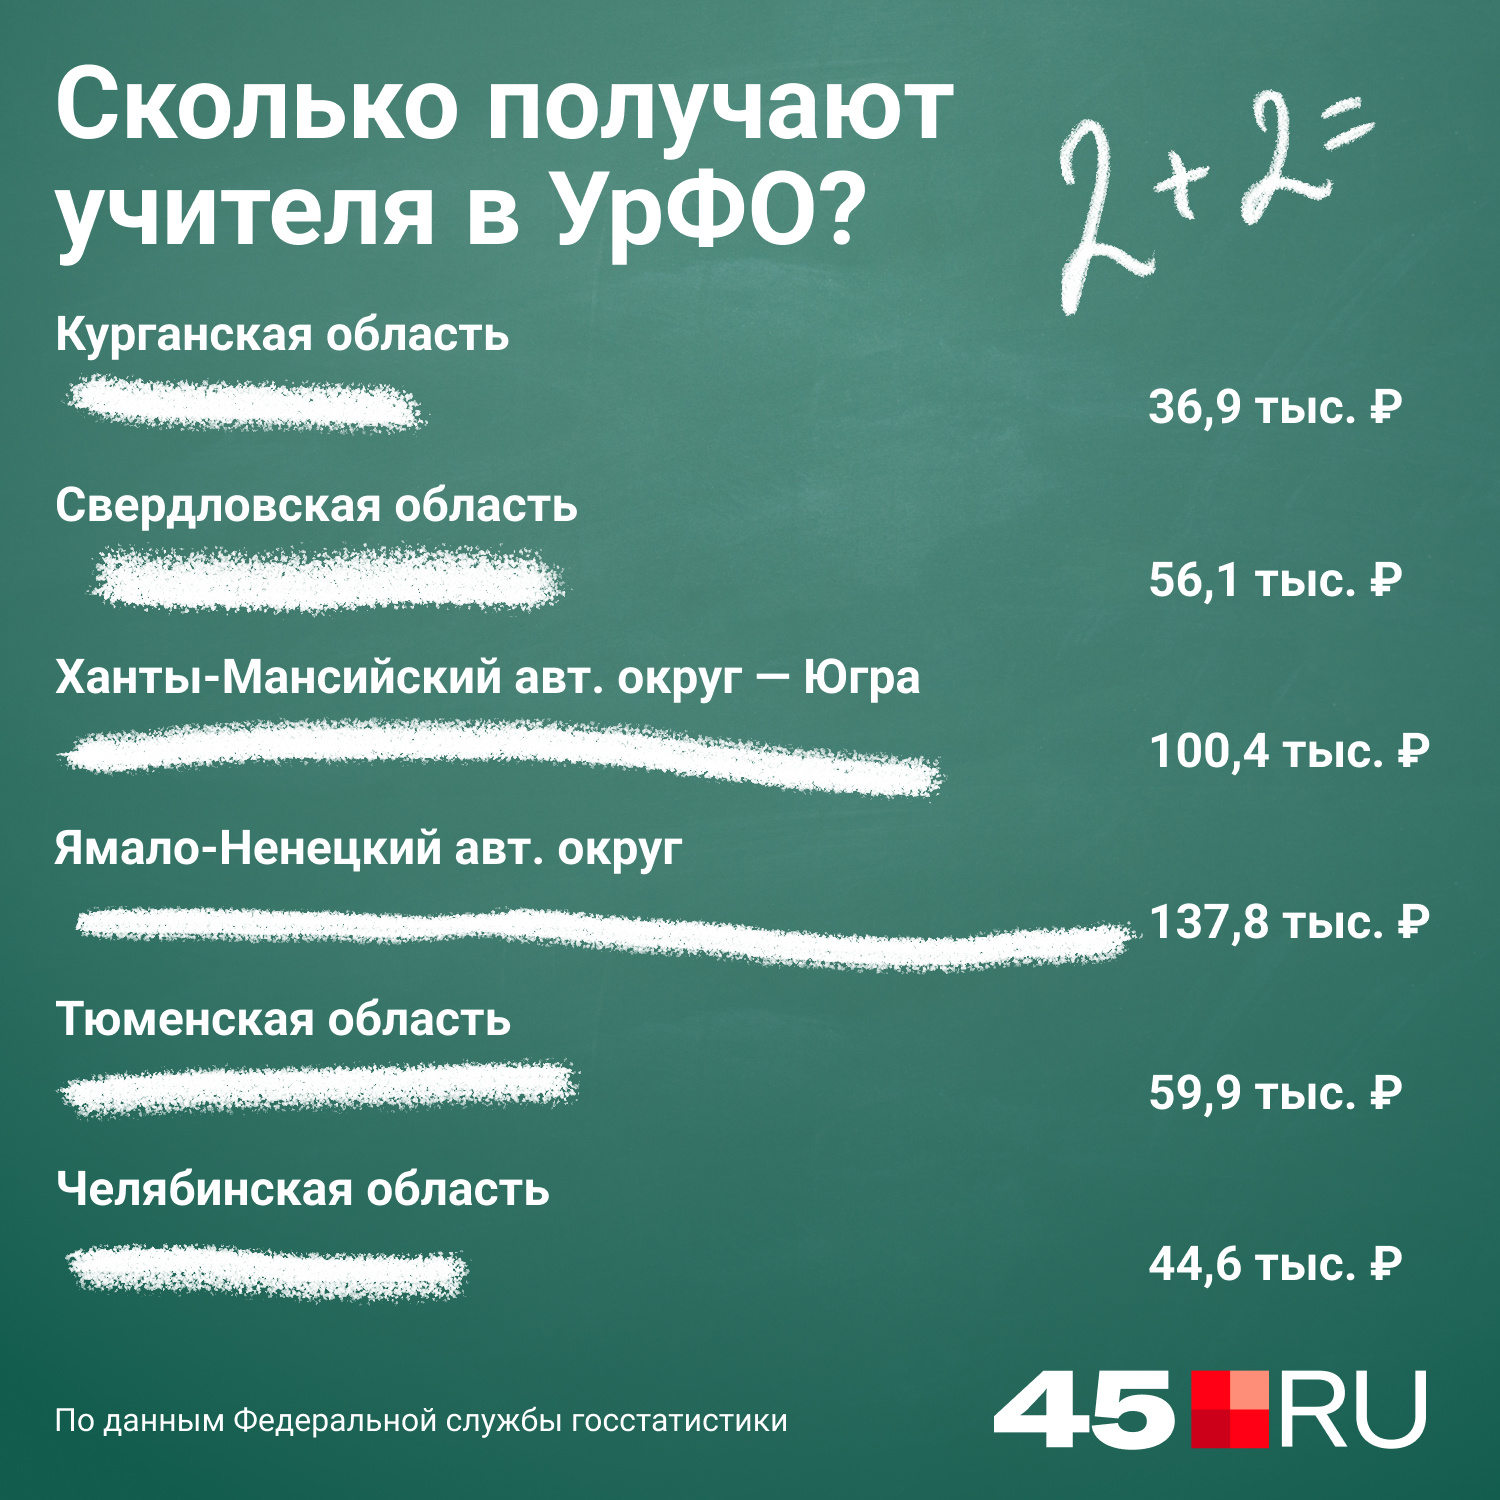 А вот такую заработную плату получают учителя в Уральском регионе по мнению статистики